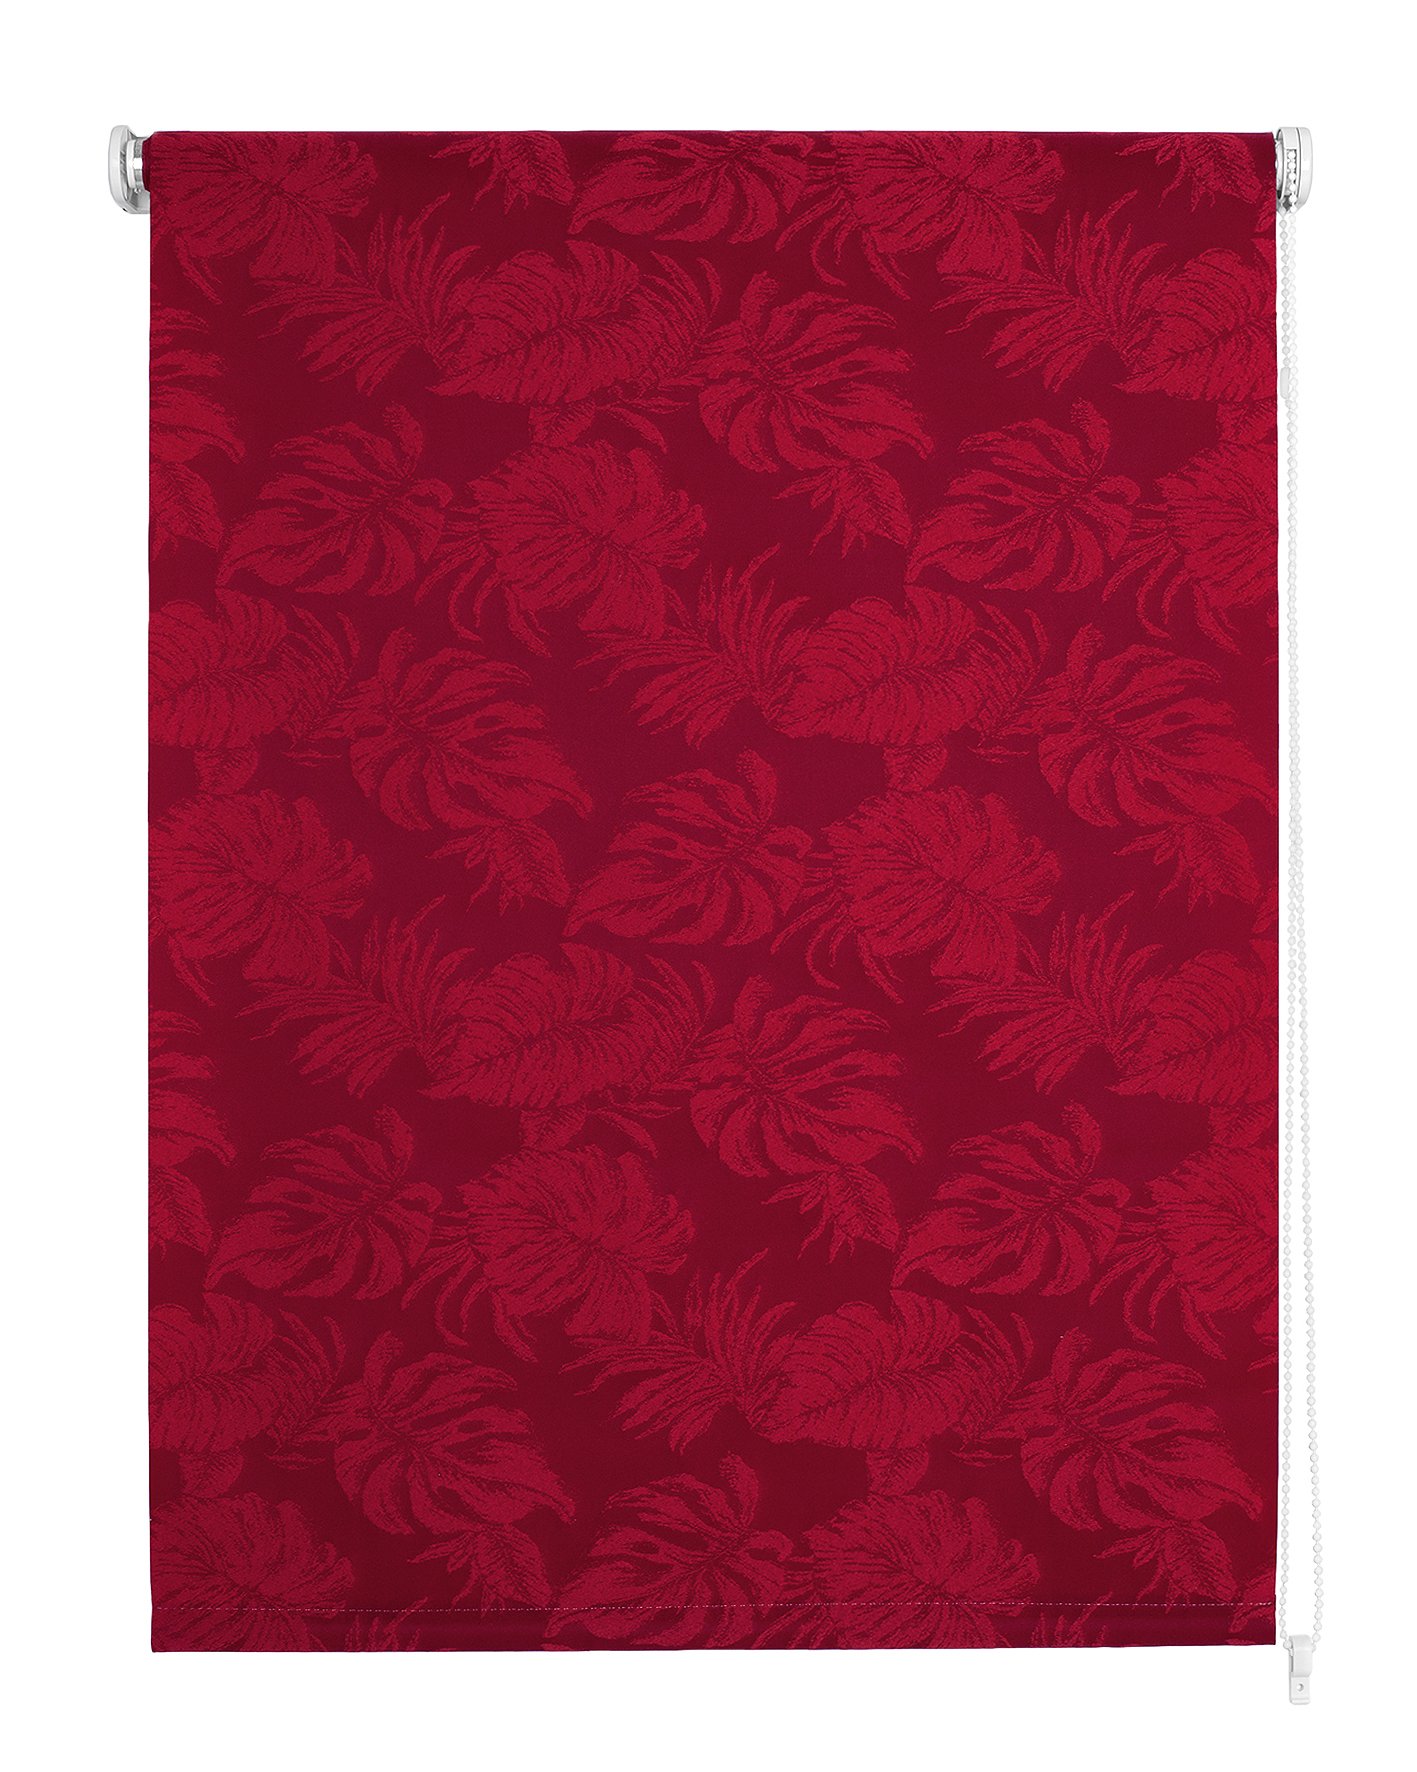 Klasikinė ritininė užuolaida OSLO, raudonos sp.,140 x 170 cm, 100 % poliesteris - 4